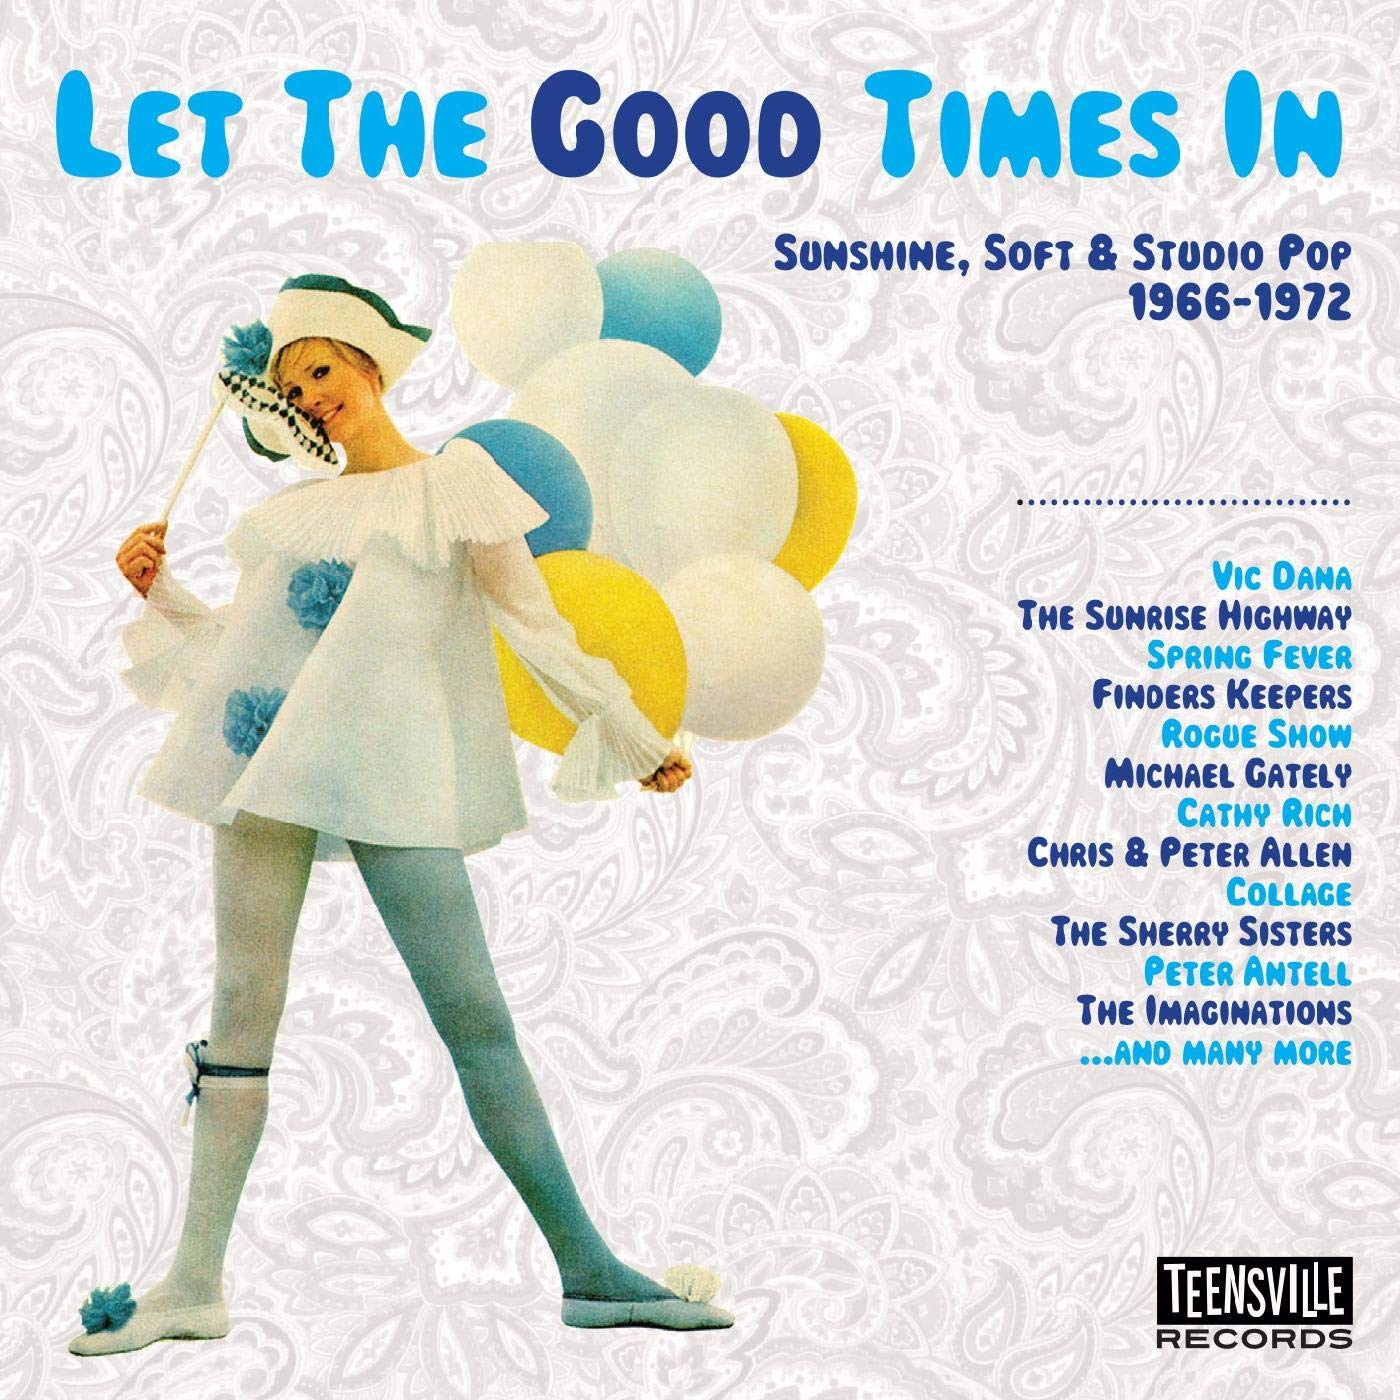 V.A. (SUNSHINE, SOFT & STUDIO POP) / LET THE GOOD TIMES IN (SUNSHINE, SOFT & STUDIO POP 1966-1972)